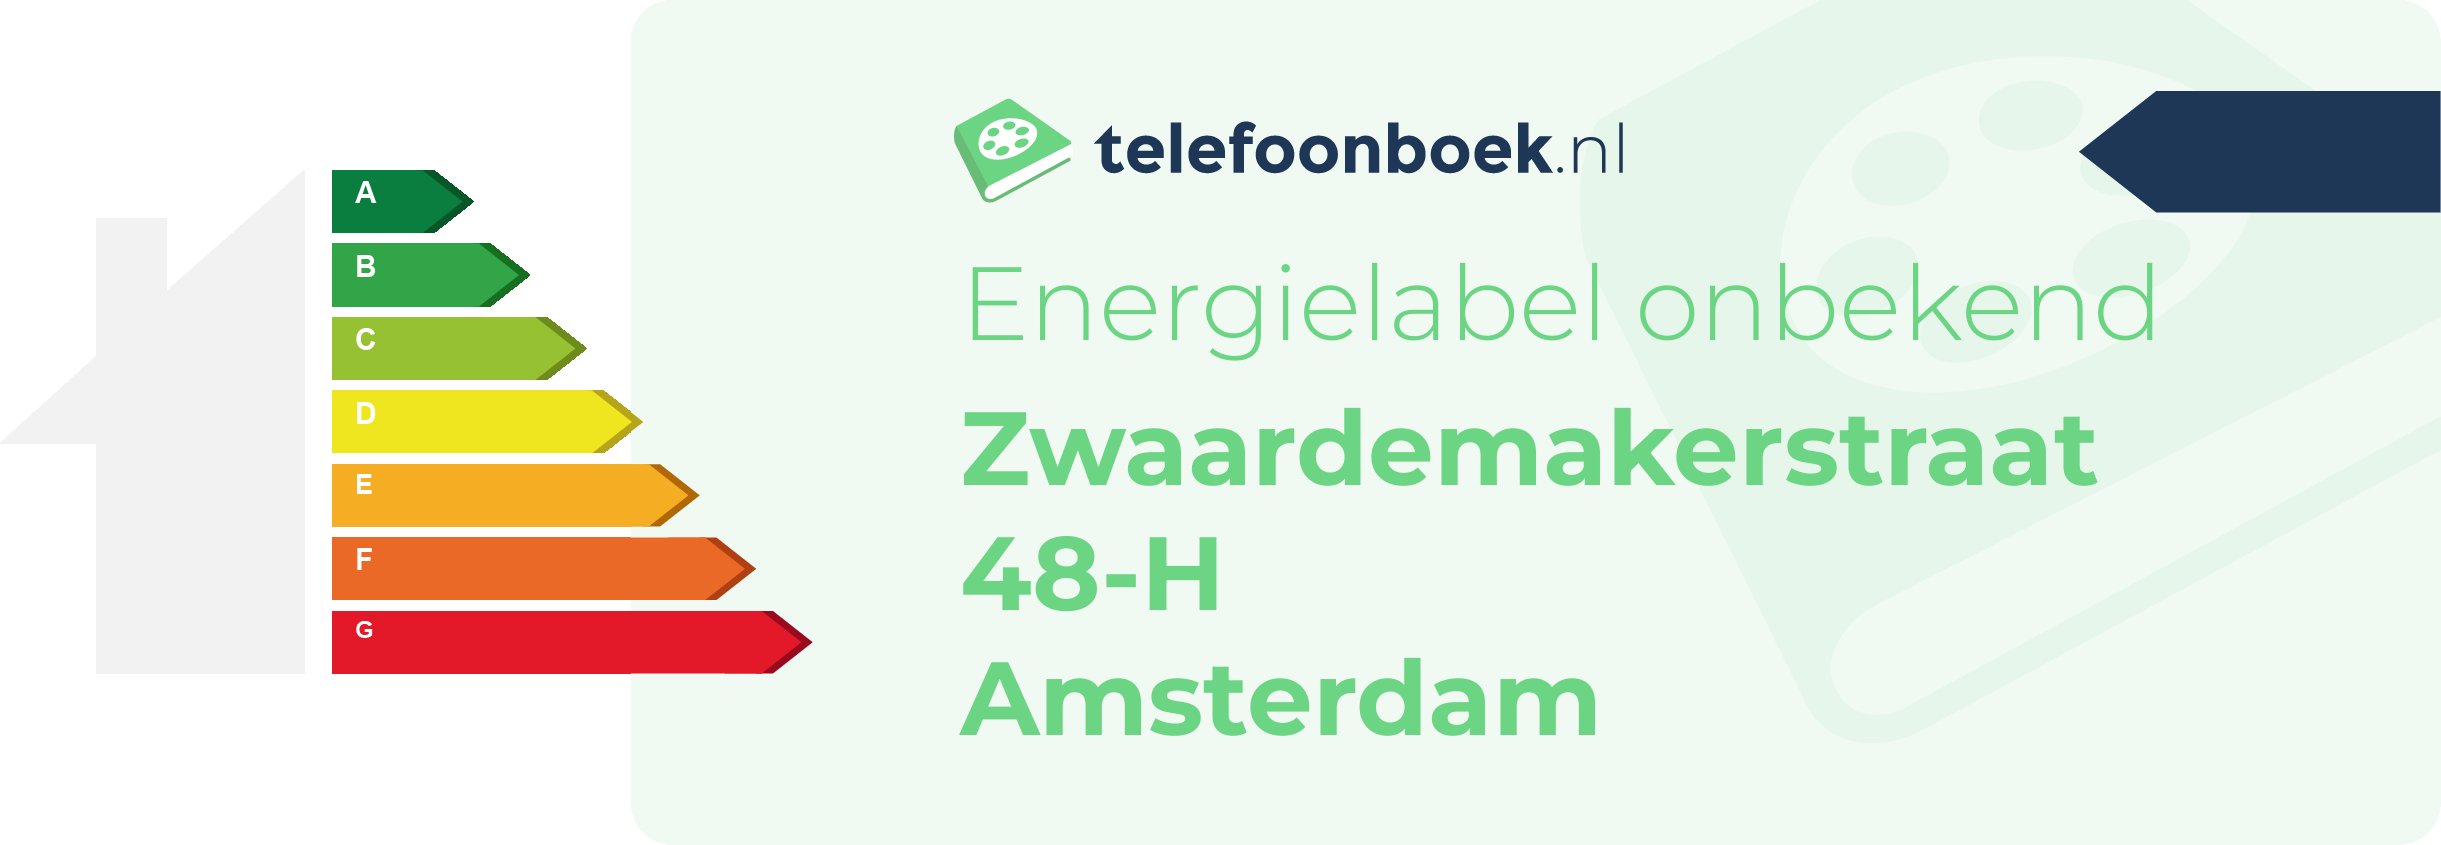 Energielabel Zwaardemakerstraat 48-H Amsterdam